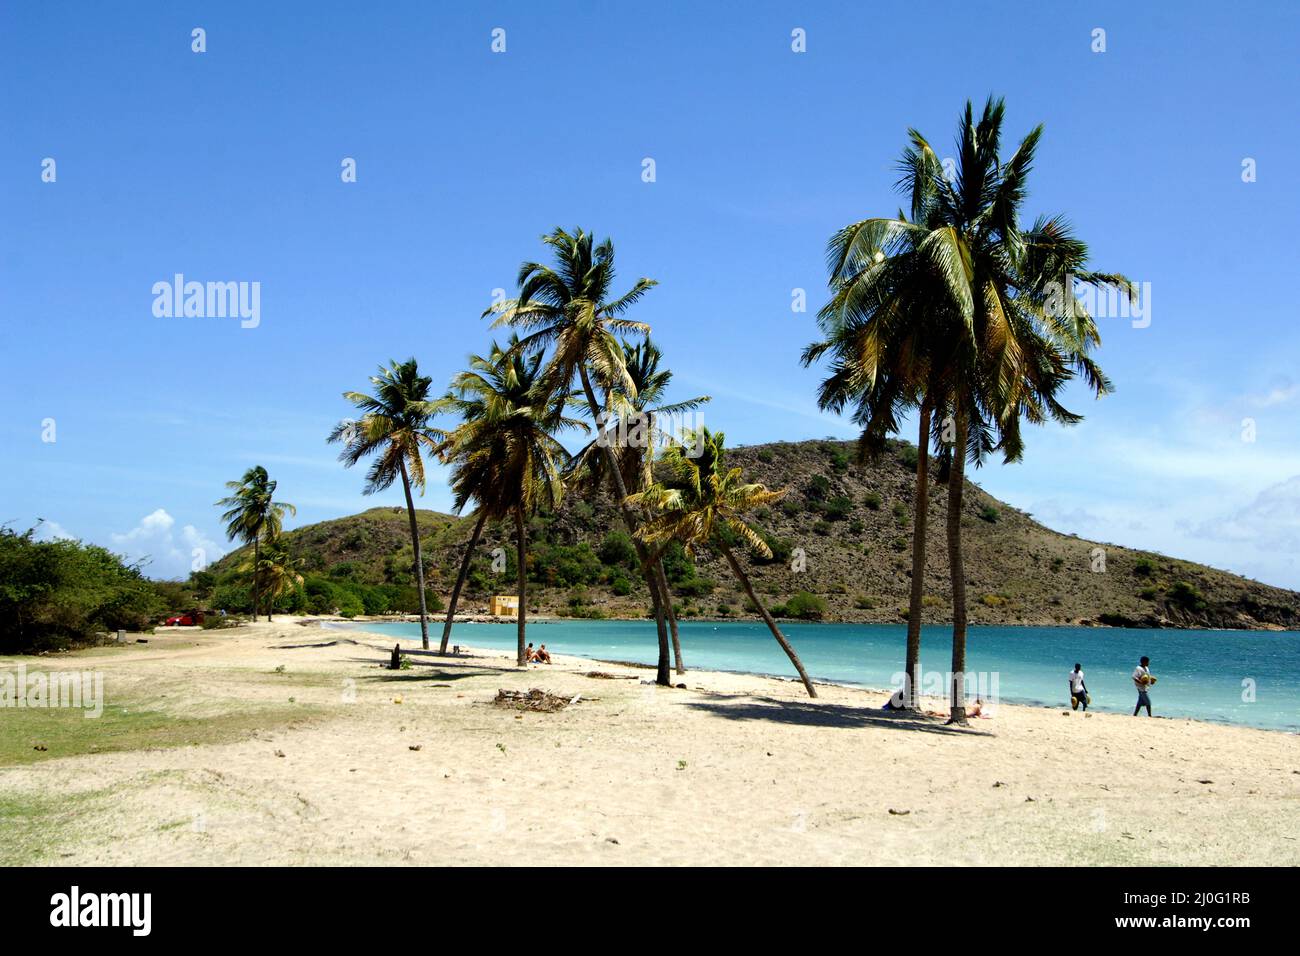 Archivo de foto con fecha 18/03/07 de Cockleshell Bay Beach, St Kitts, como las ventas en alza de divisas de largo recorrido han sido vistos por la Oficina de Correos, a medida que los turistas británicos se equipan para escapadas en el extranjero. Foto de stock